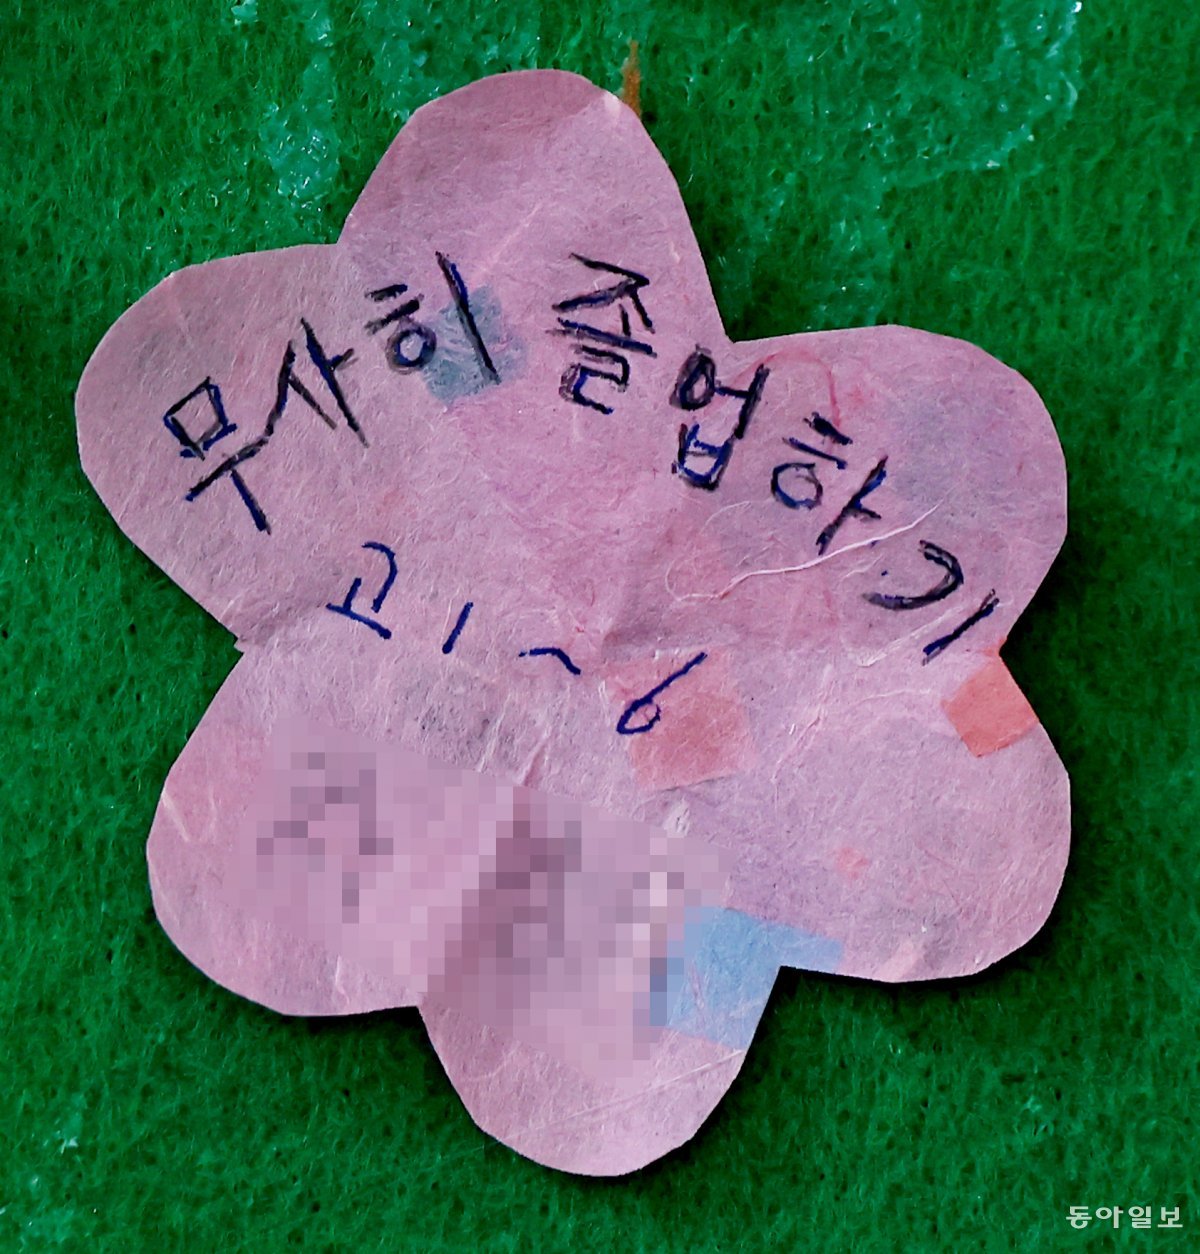 스승의 날인 15일 서울 마포구 일성여자중고등학교 1학년 복도 게시판에 한 입학생이 ‘무사히 졸업하기’라고 적은 쪽지가 붙어 있다. 양회성 기자 yohan@donga.com